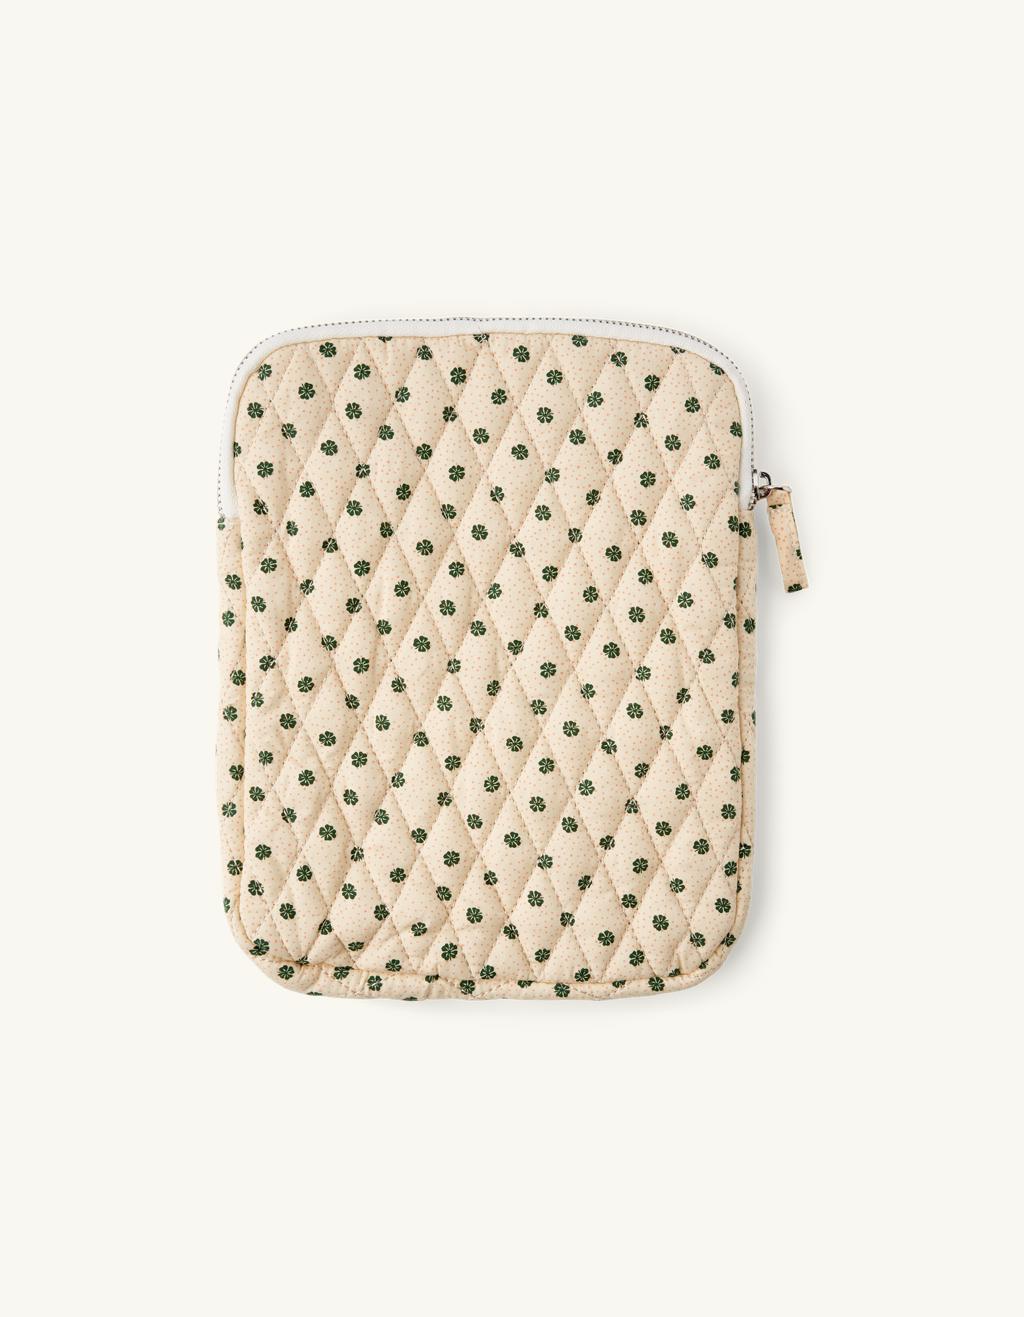 Tablet cover | Cotton/polyester. 25.5 x 20 x 1.7 cm. | Søstrene Grene